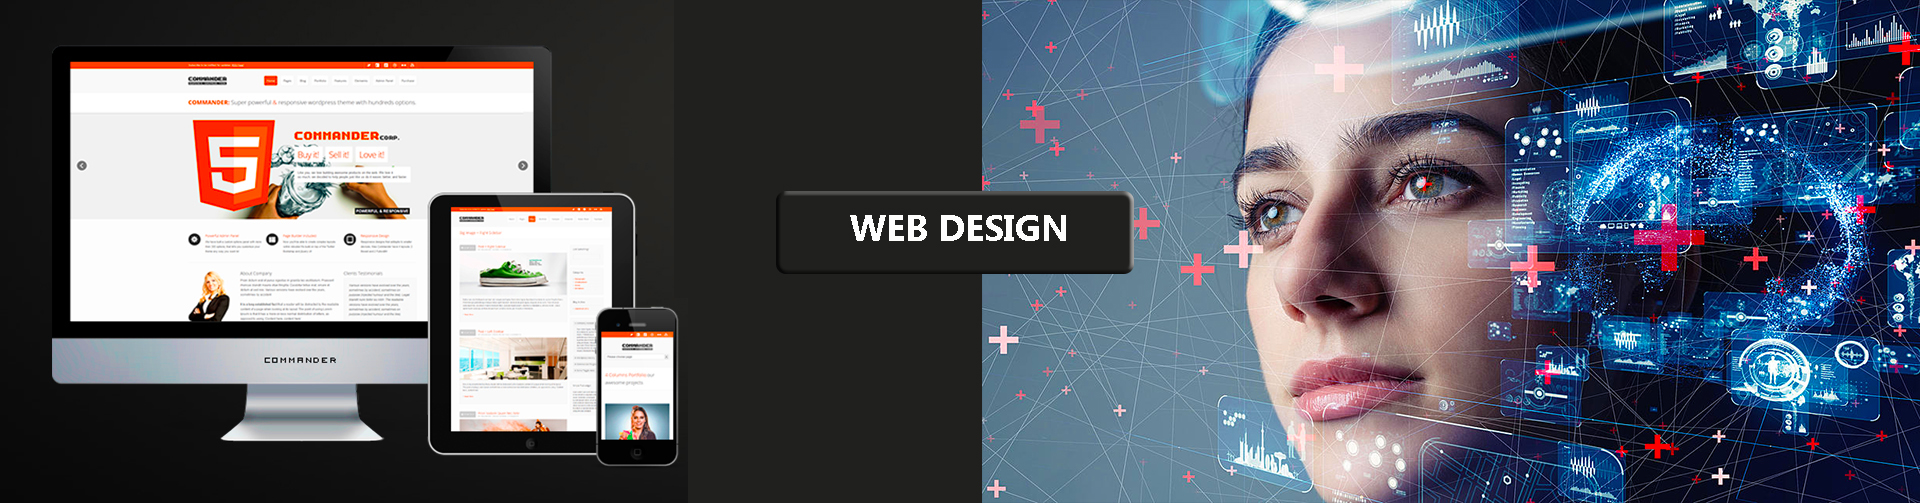 mauritius web design